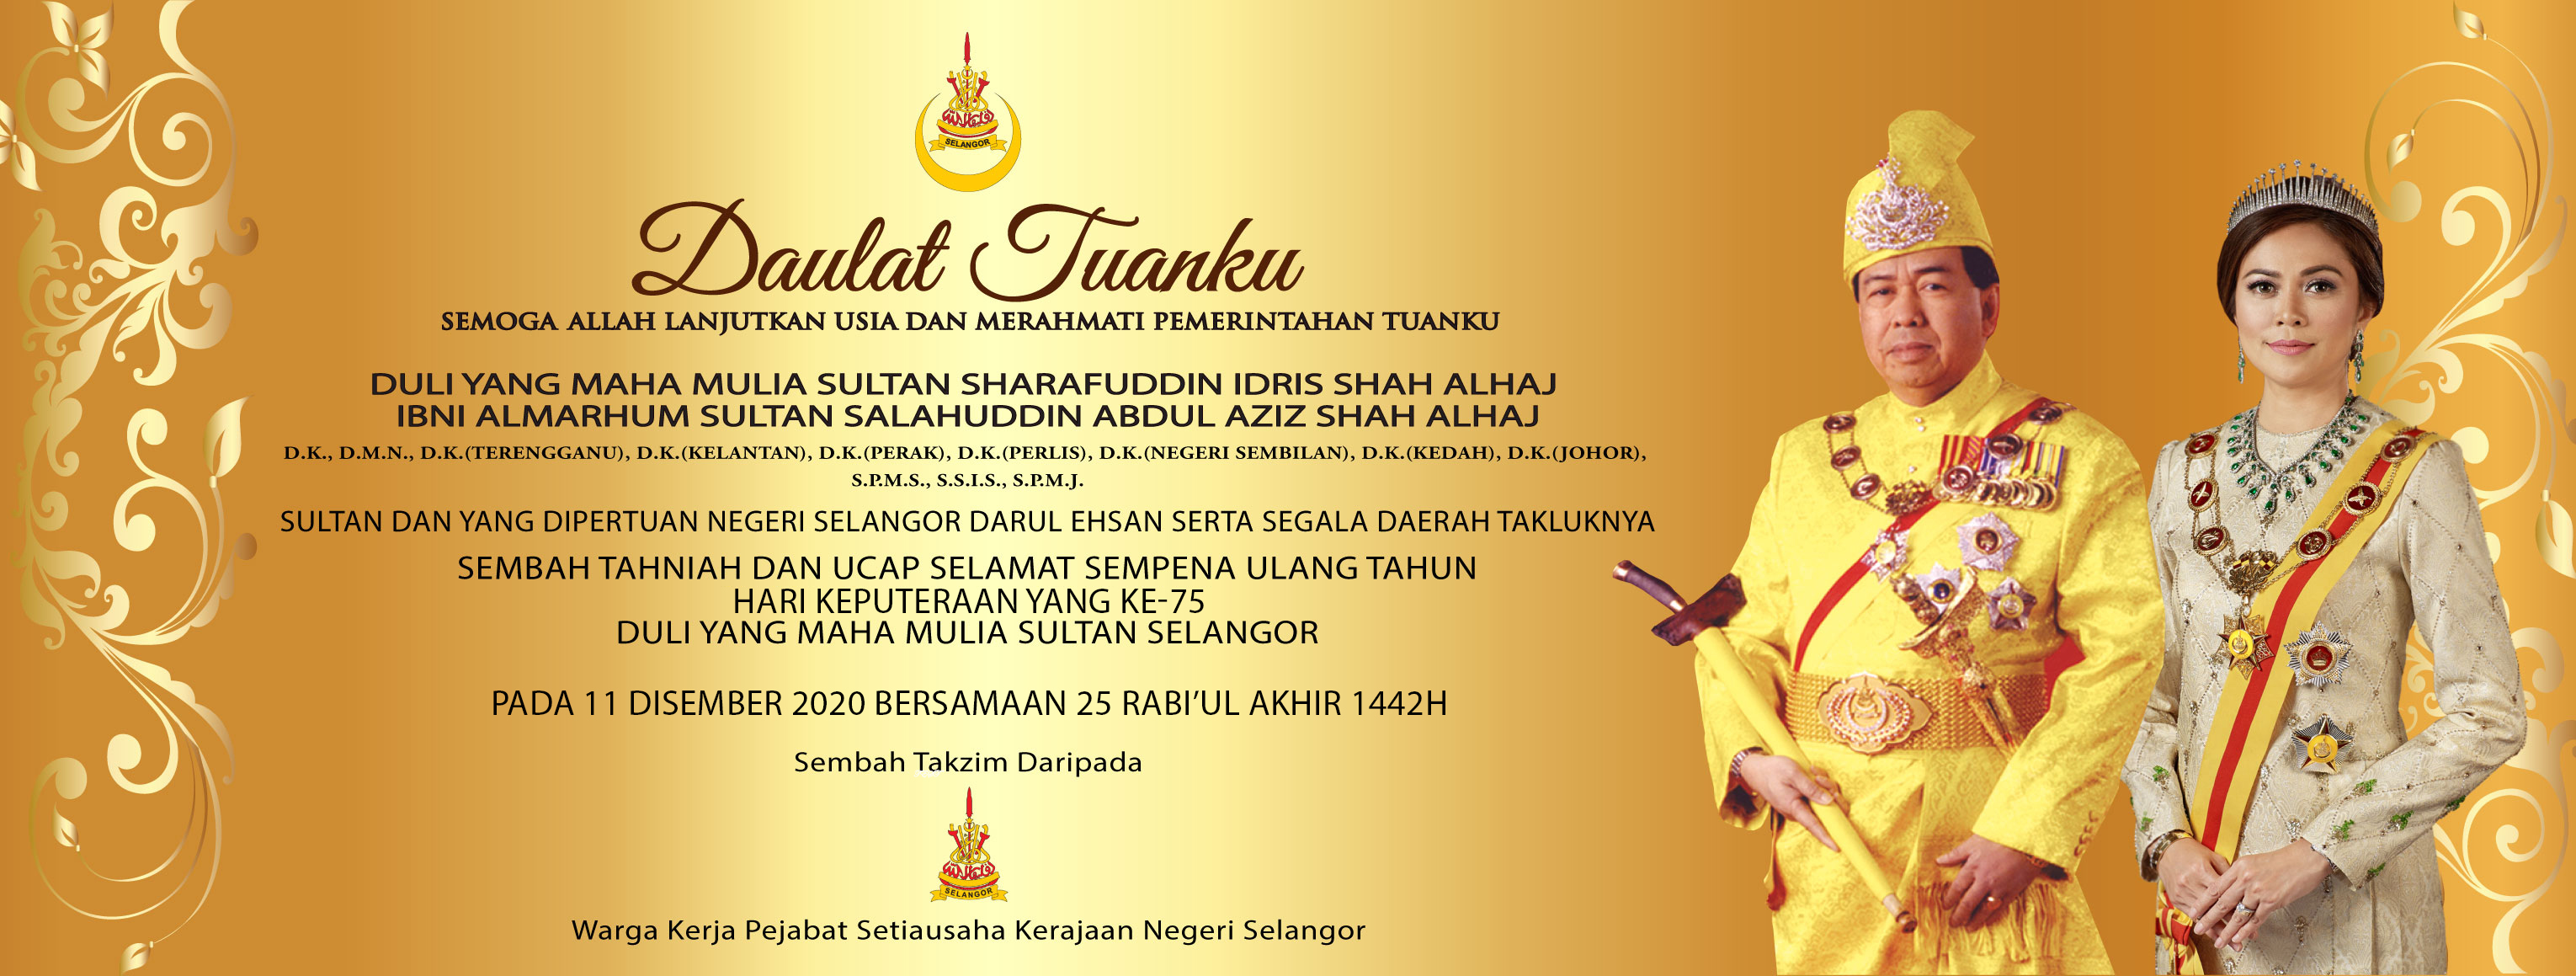 Sembah ucapan keputeraan DYMM Sultan Selangor 75